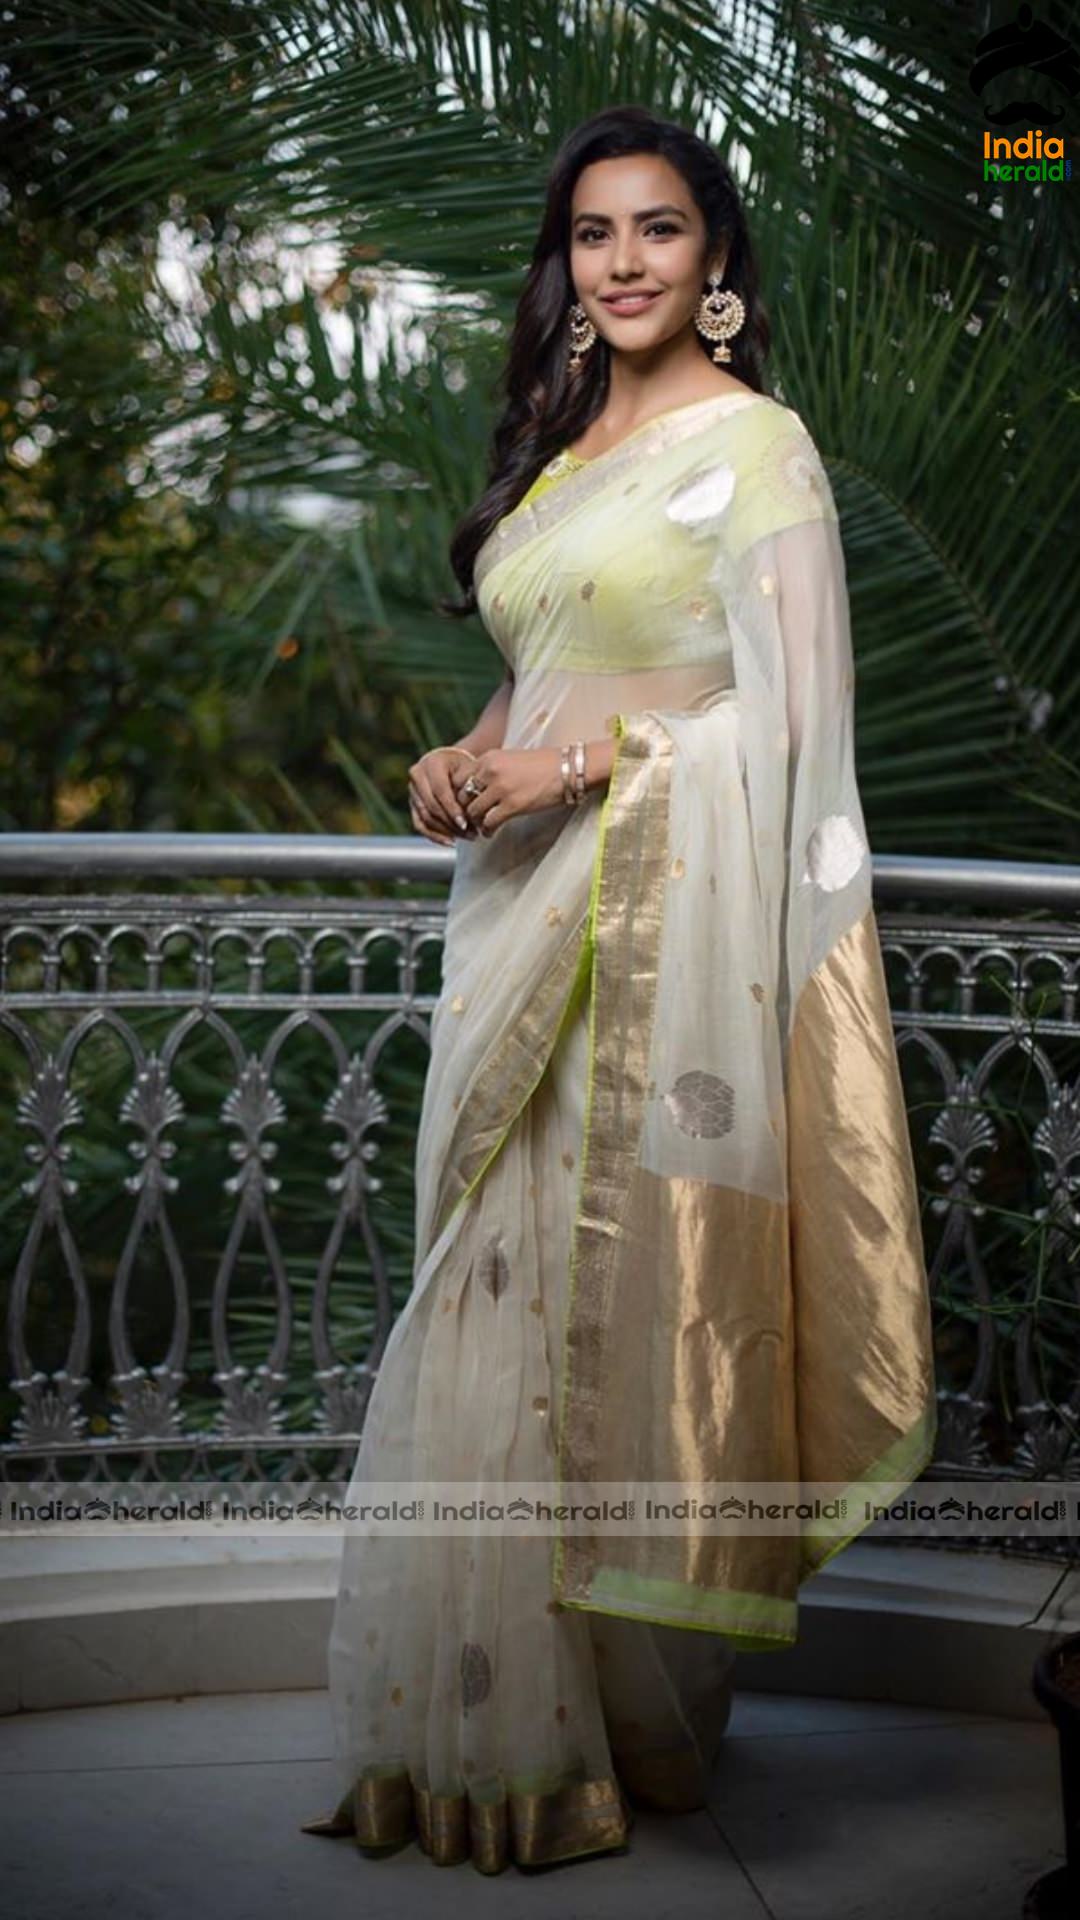 Priya Anand Looking So Elegant in Saree